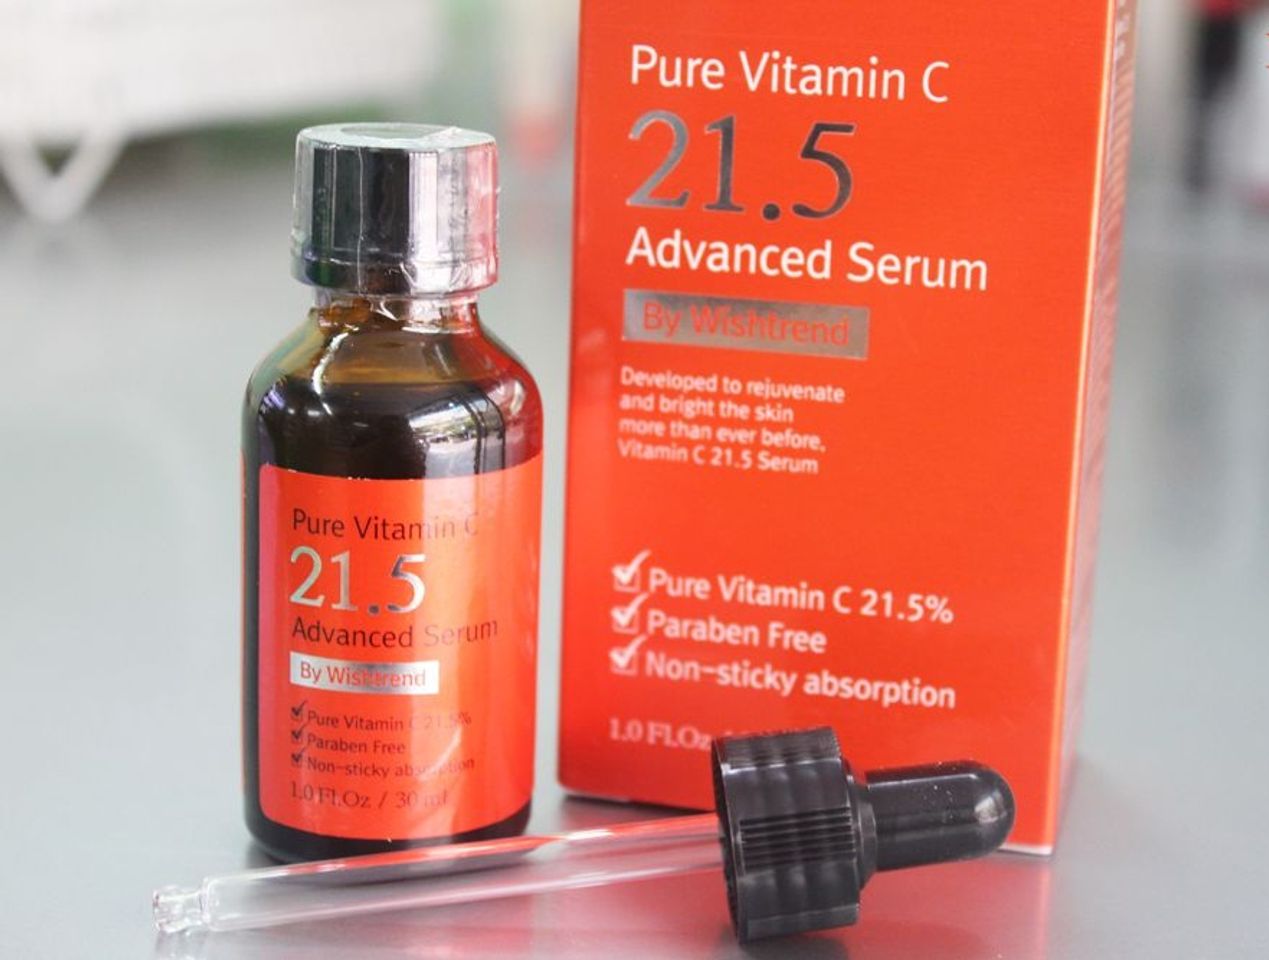 Pure Vitamin C21.5 Advanced Serum chính là loại tinh chất vitamin C được nhiều phụ nữ tin chọn sử dụng hàng ngày